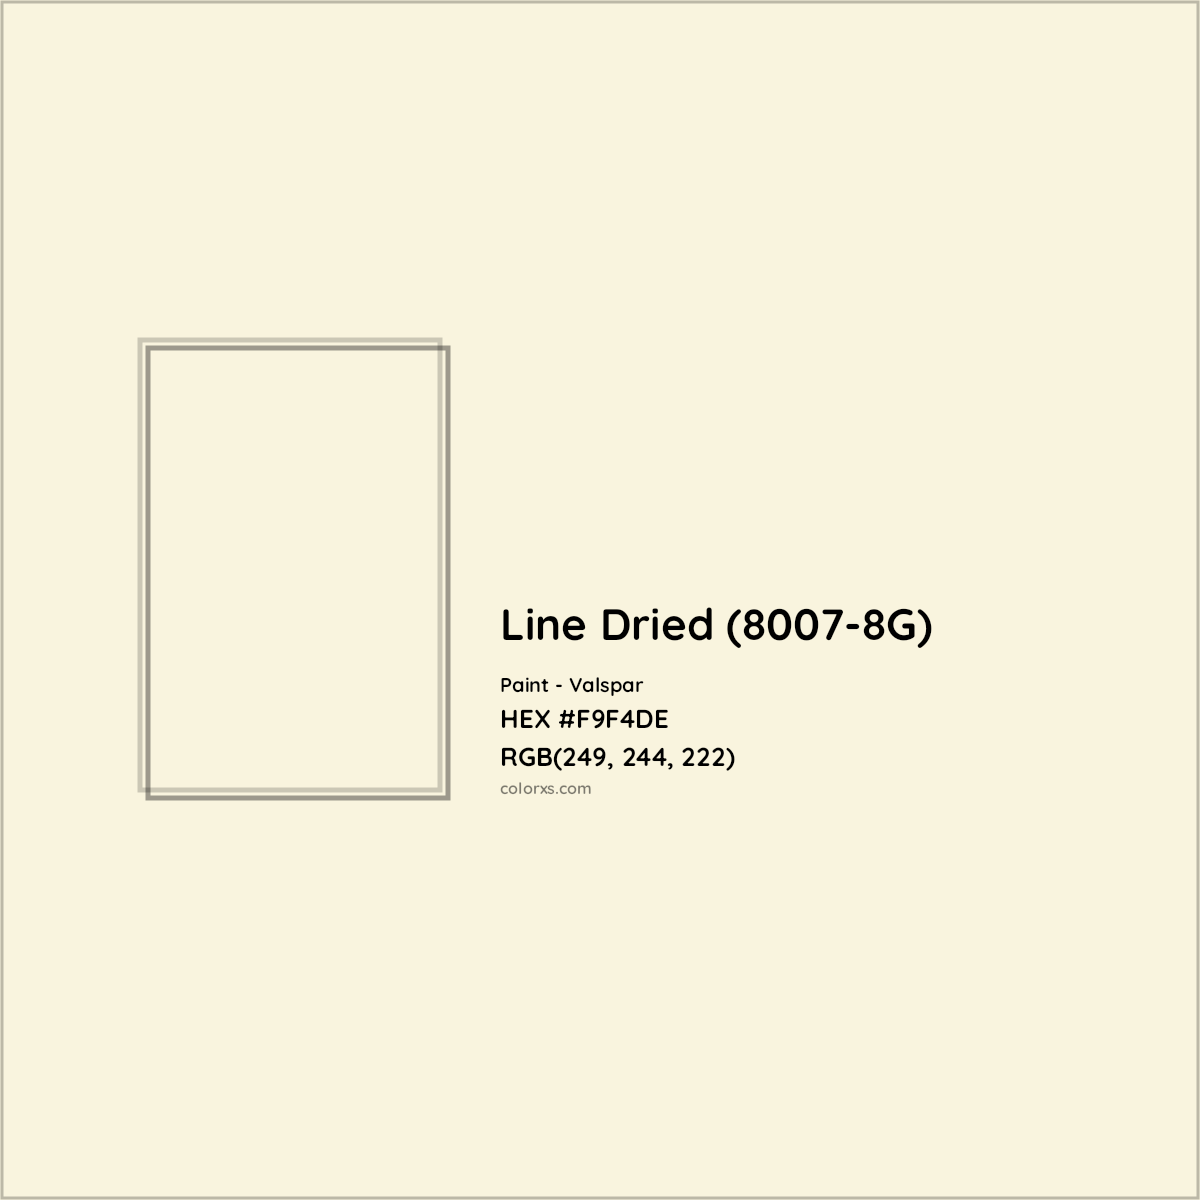 HEX #F9F4DE Line Dried (8007-8G) Paint Valspar - Color Code